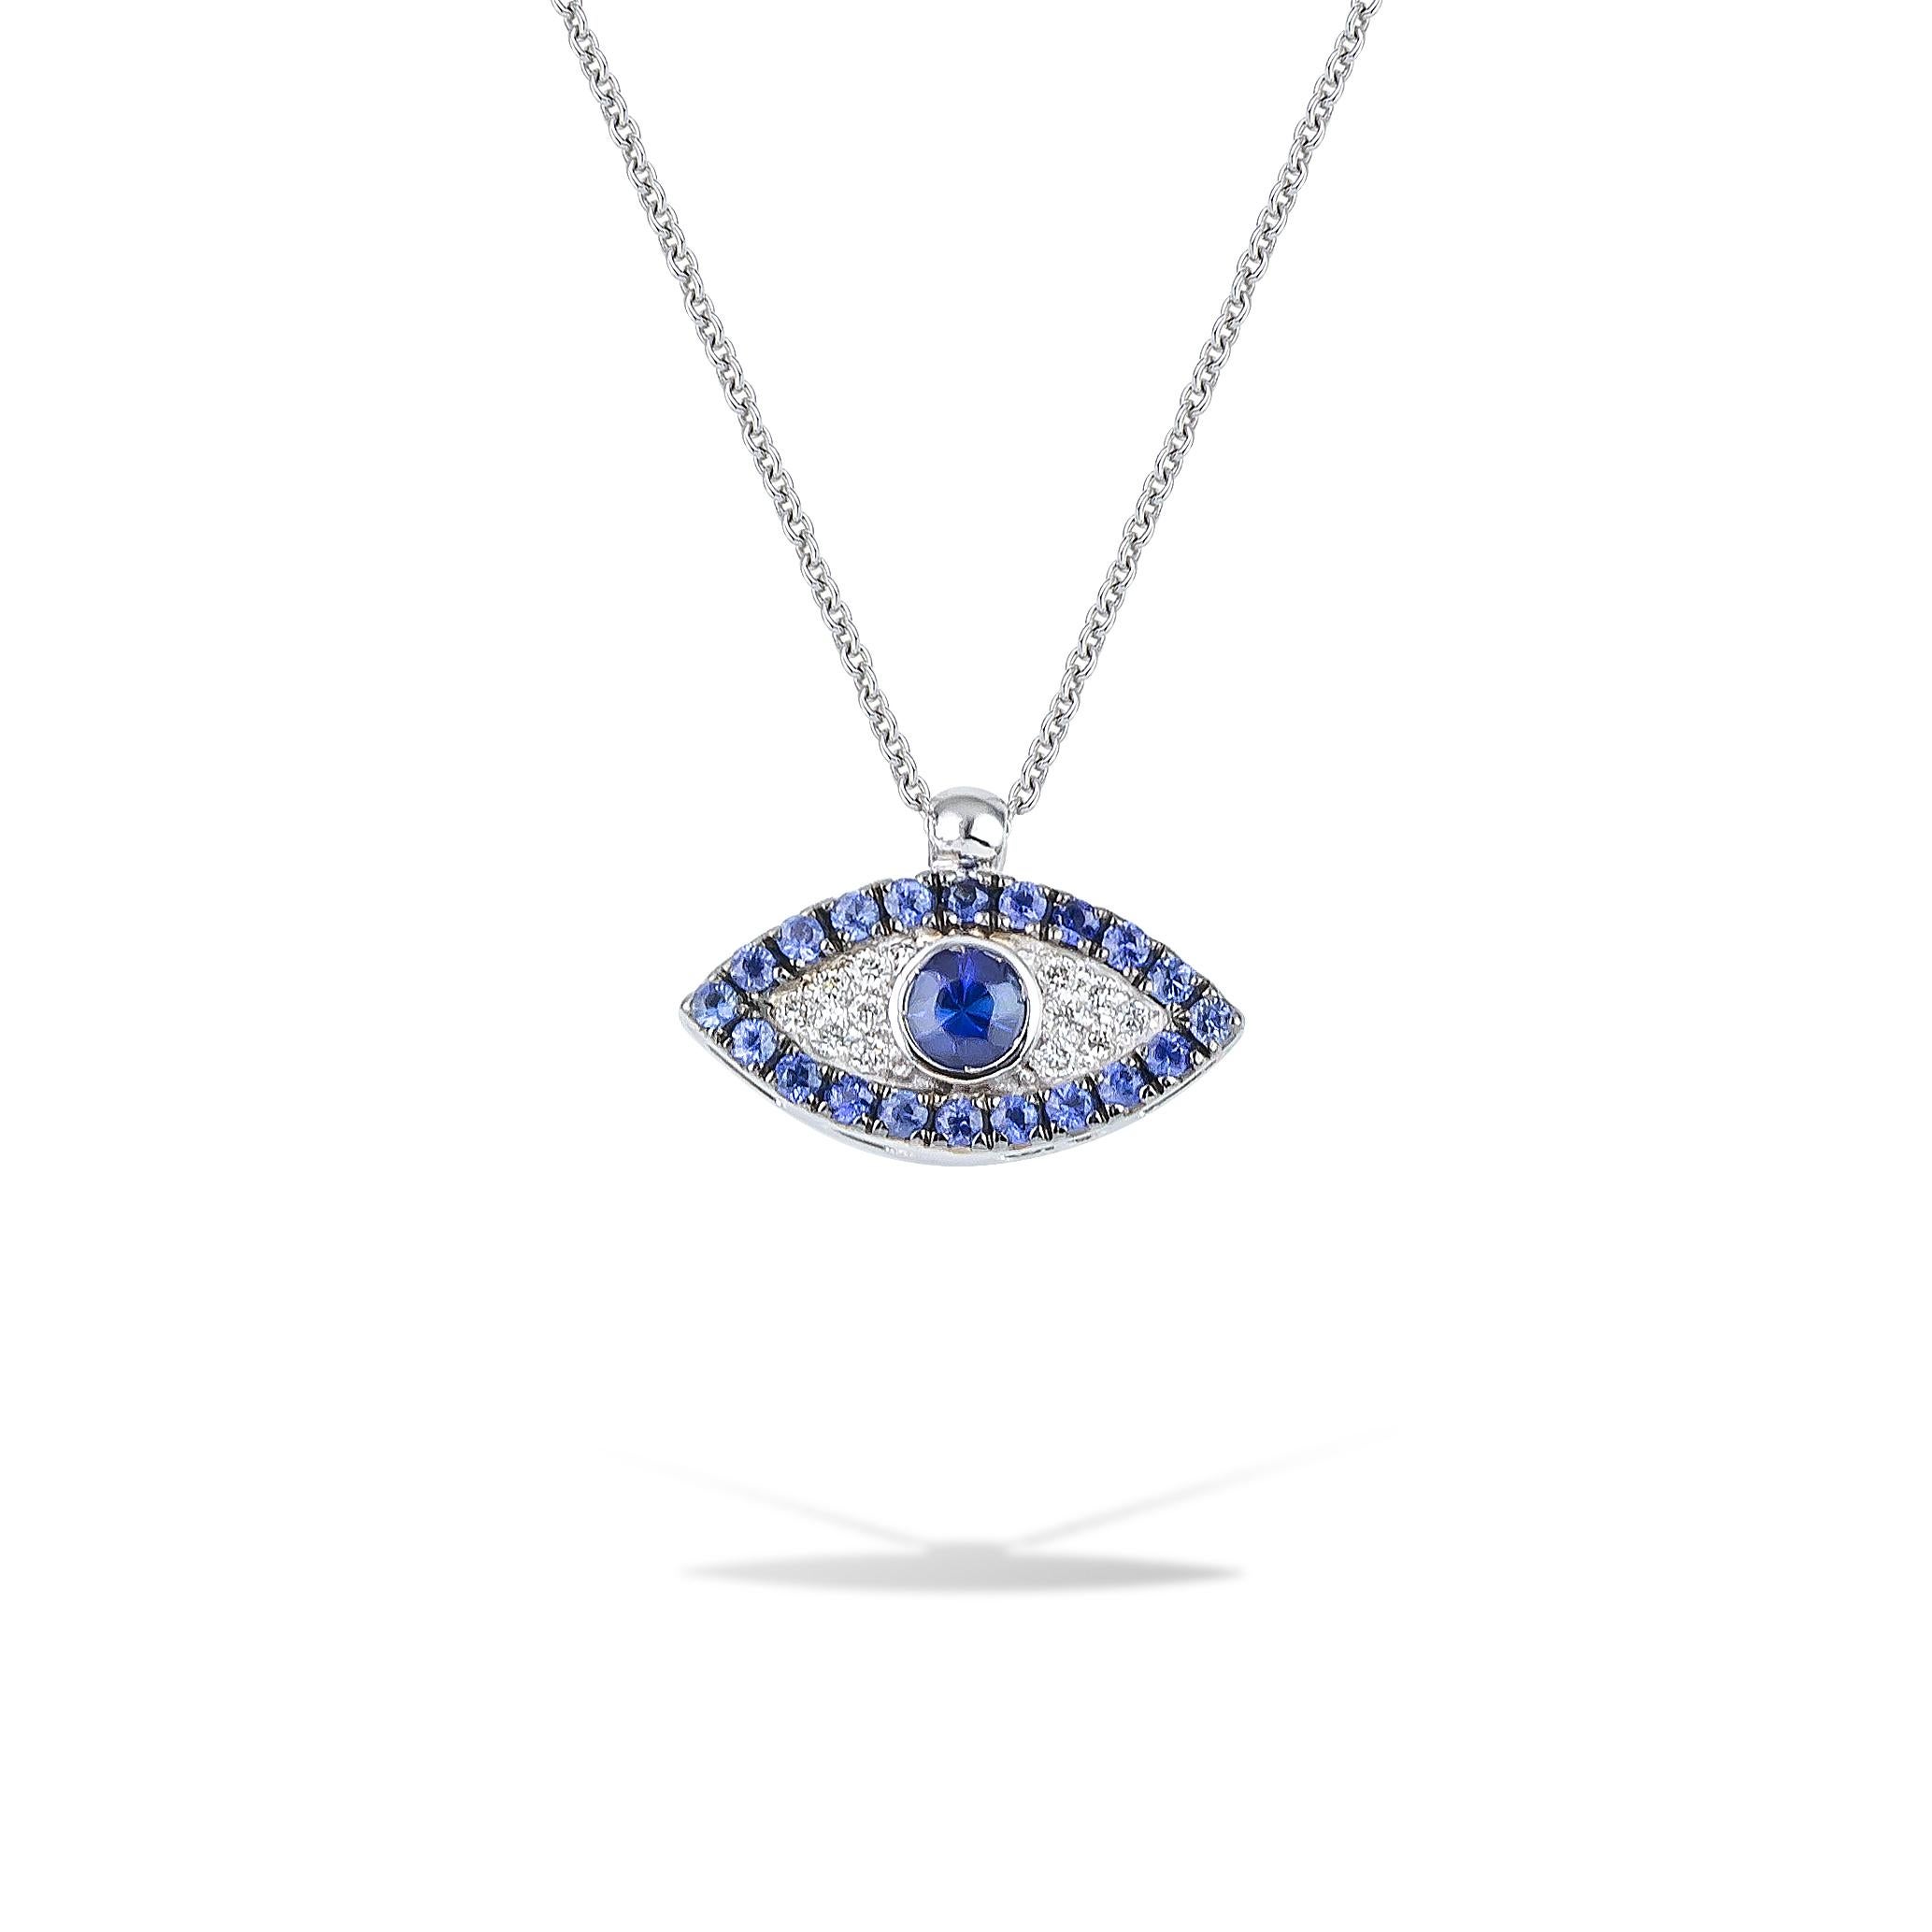 Griechisches Böses Auge Anhänger Halskette handgefertigt in 18Kt Gold blauen Saphiren und Diamanten. 
Ein Rahmen aus blauen Saphiren umgibt die weißen, gefassten Diamanten, die die Form eines Auges bilden. In der griechischen Kultur schützt das böse